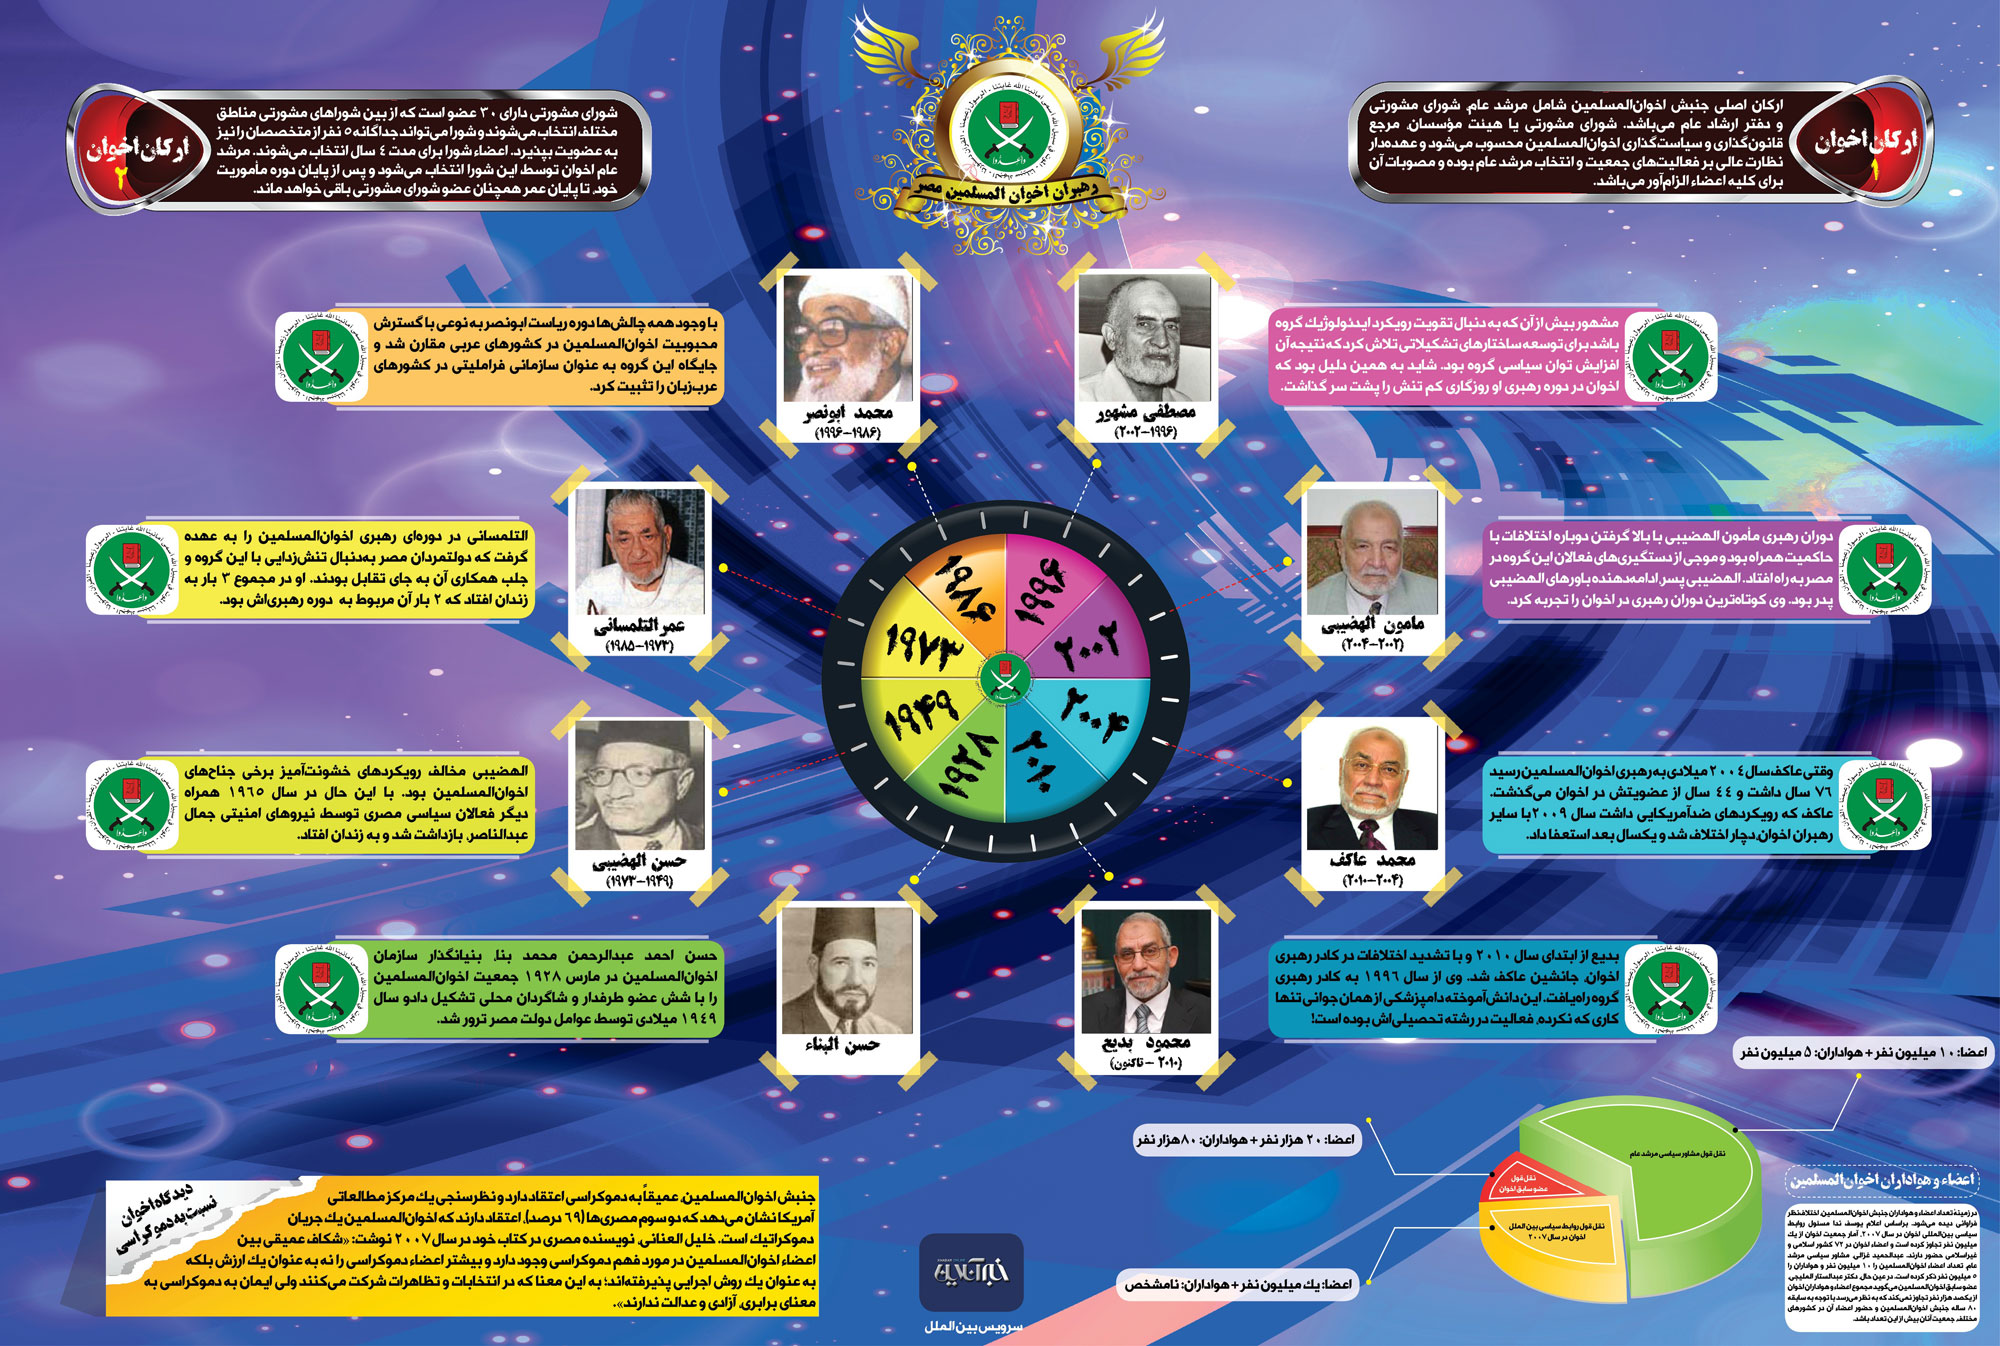 ساختار و رهبران اخوان المسلمین